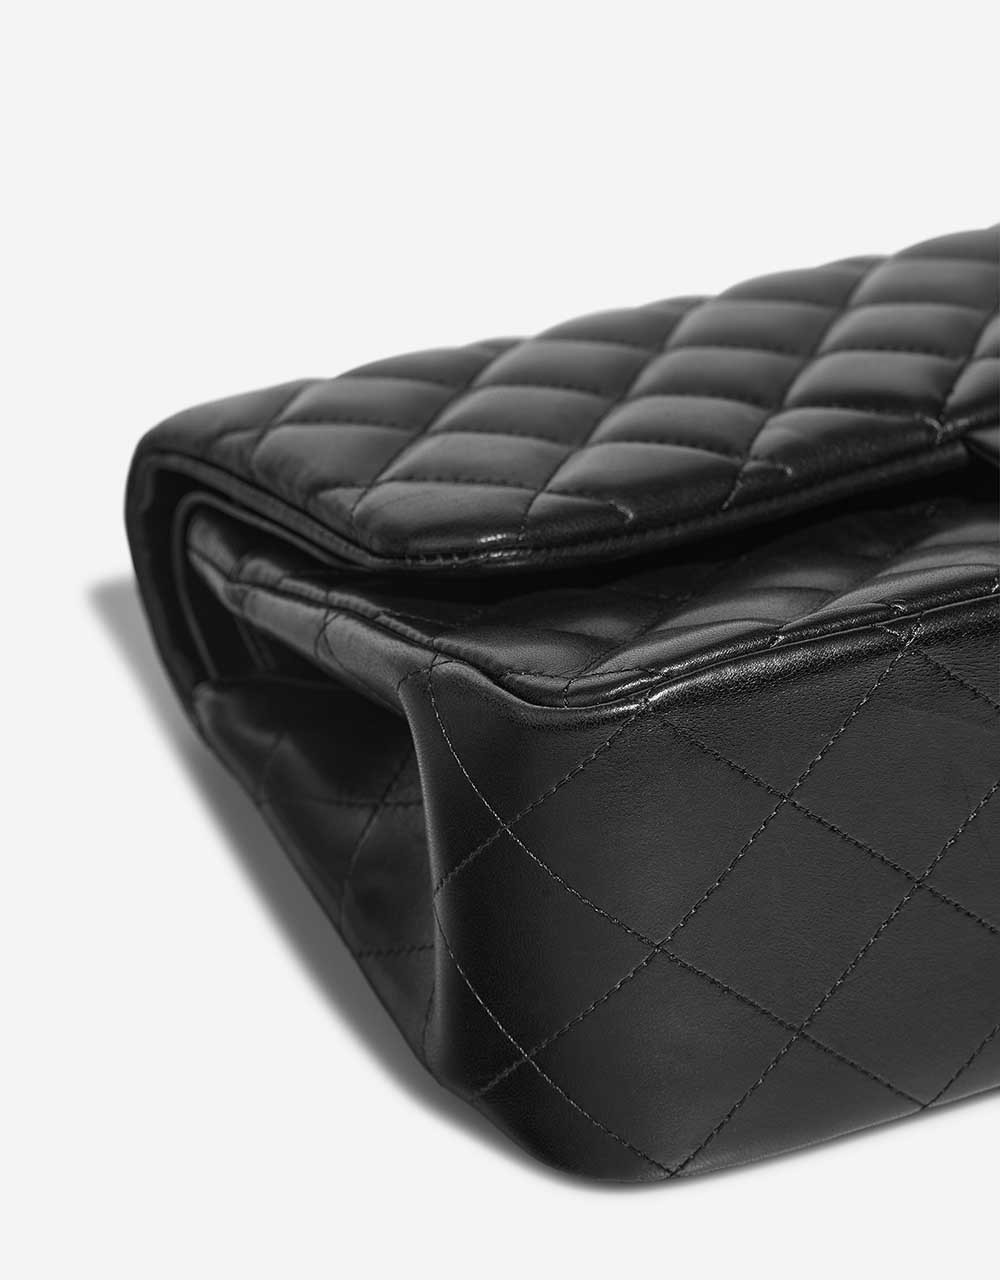 Chanel Timeless Jumbo Schwarz Gebrauchsspuren| Verkaufen Sie Ihre Designer-Tasche auf Saclab.com